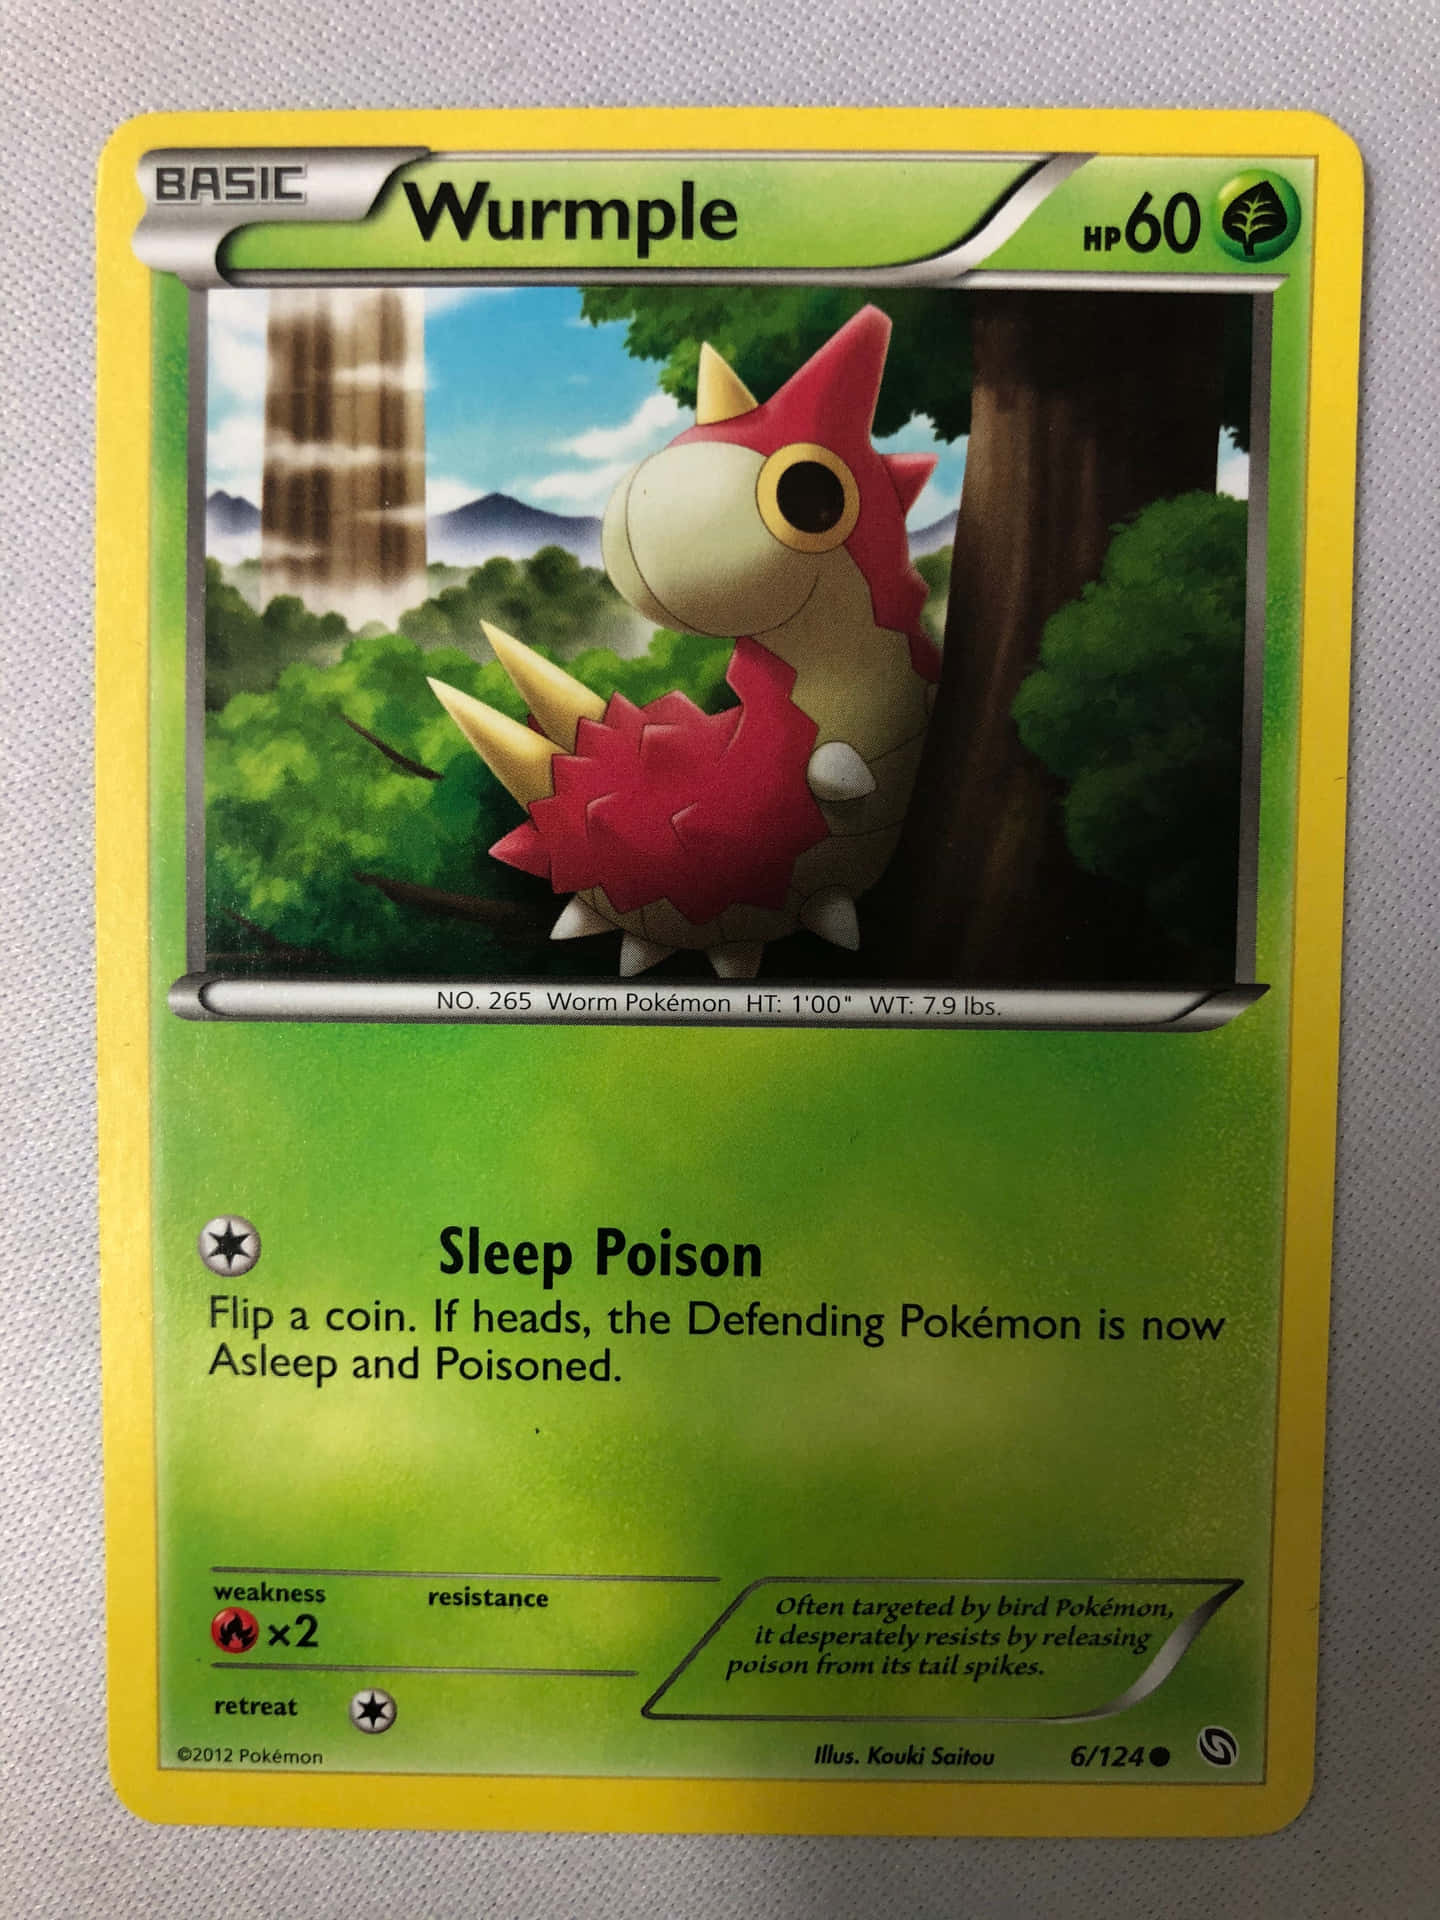 Sleep Poison Pokémon Card Of Wurmple Wallpaper